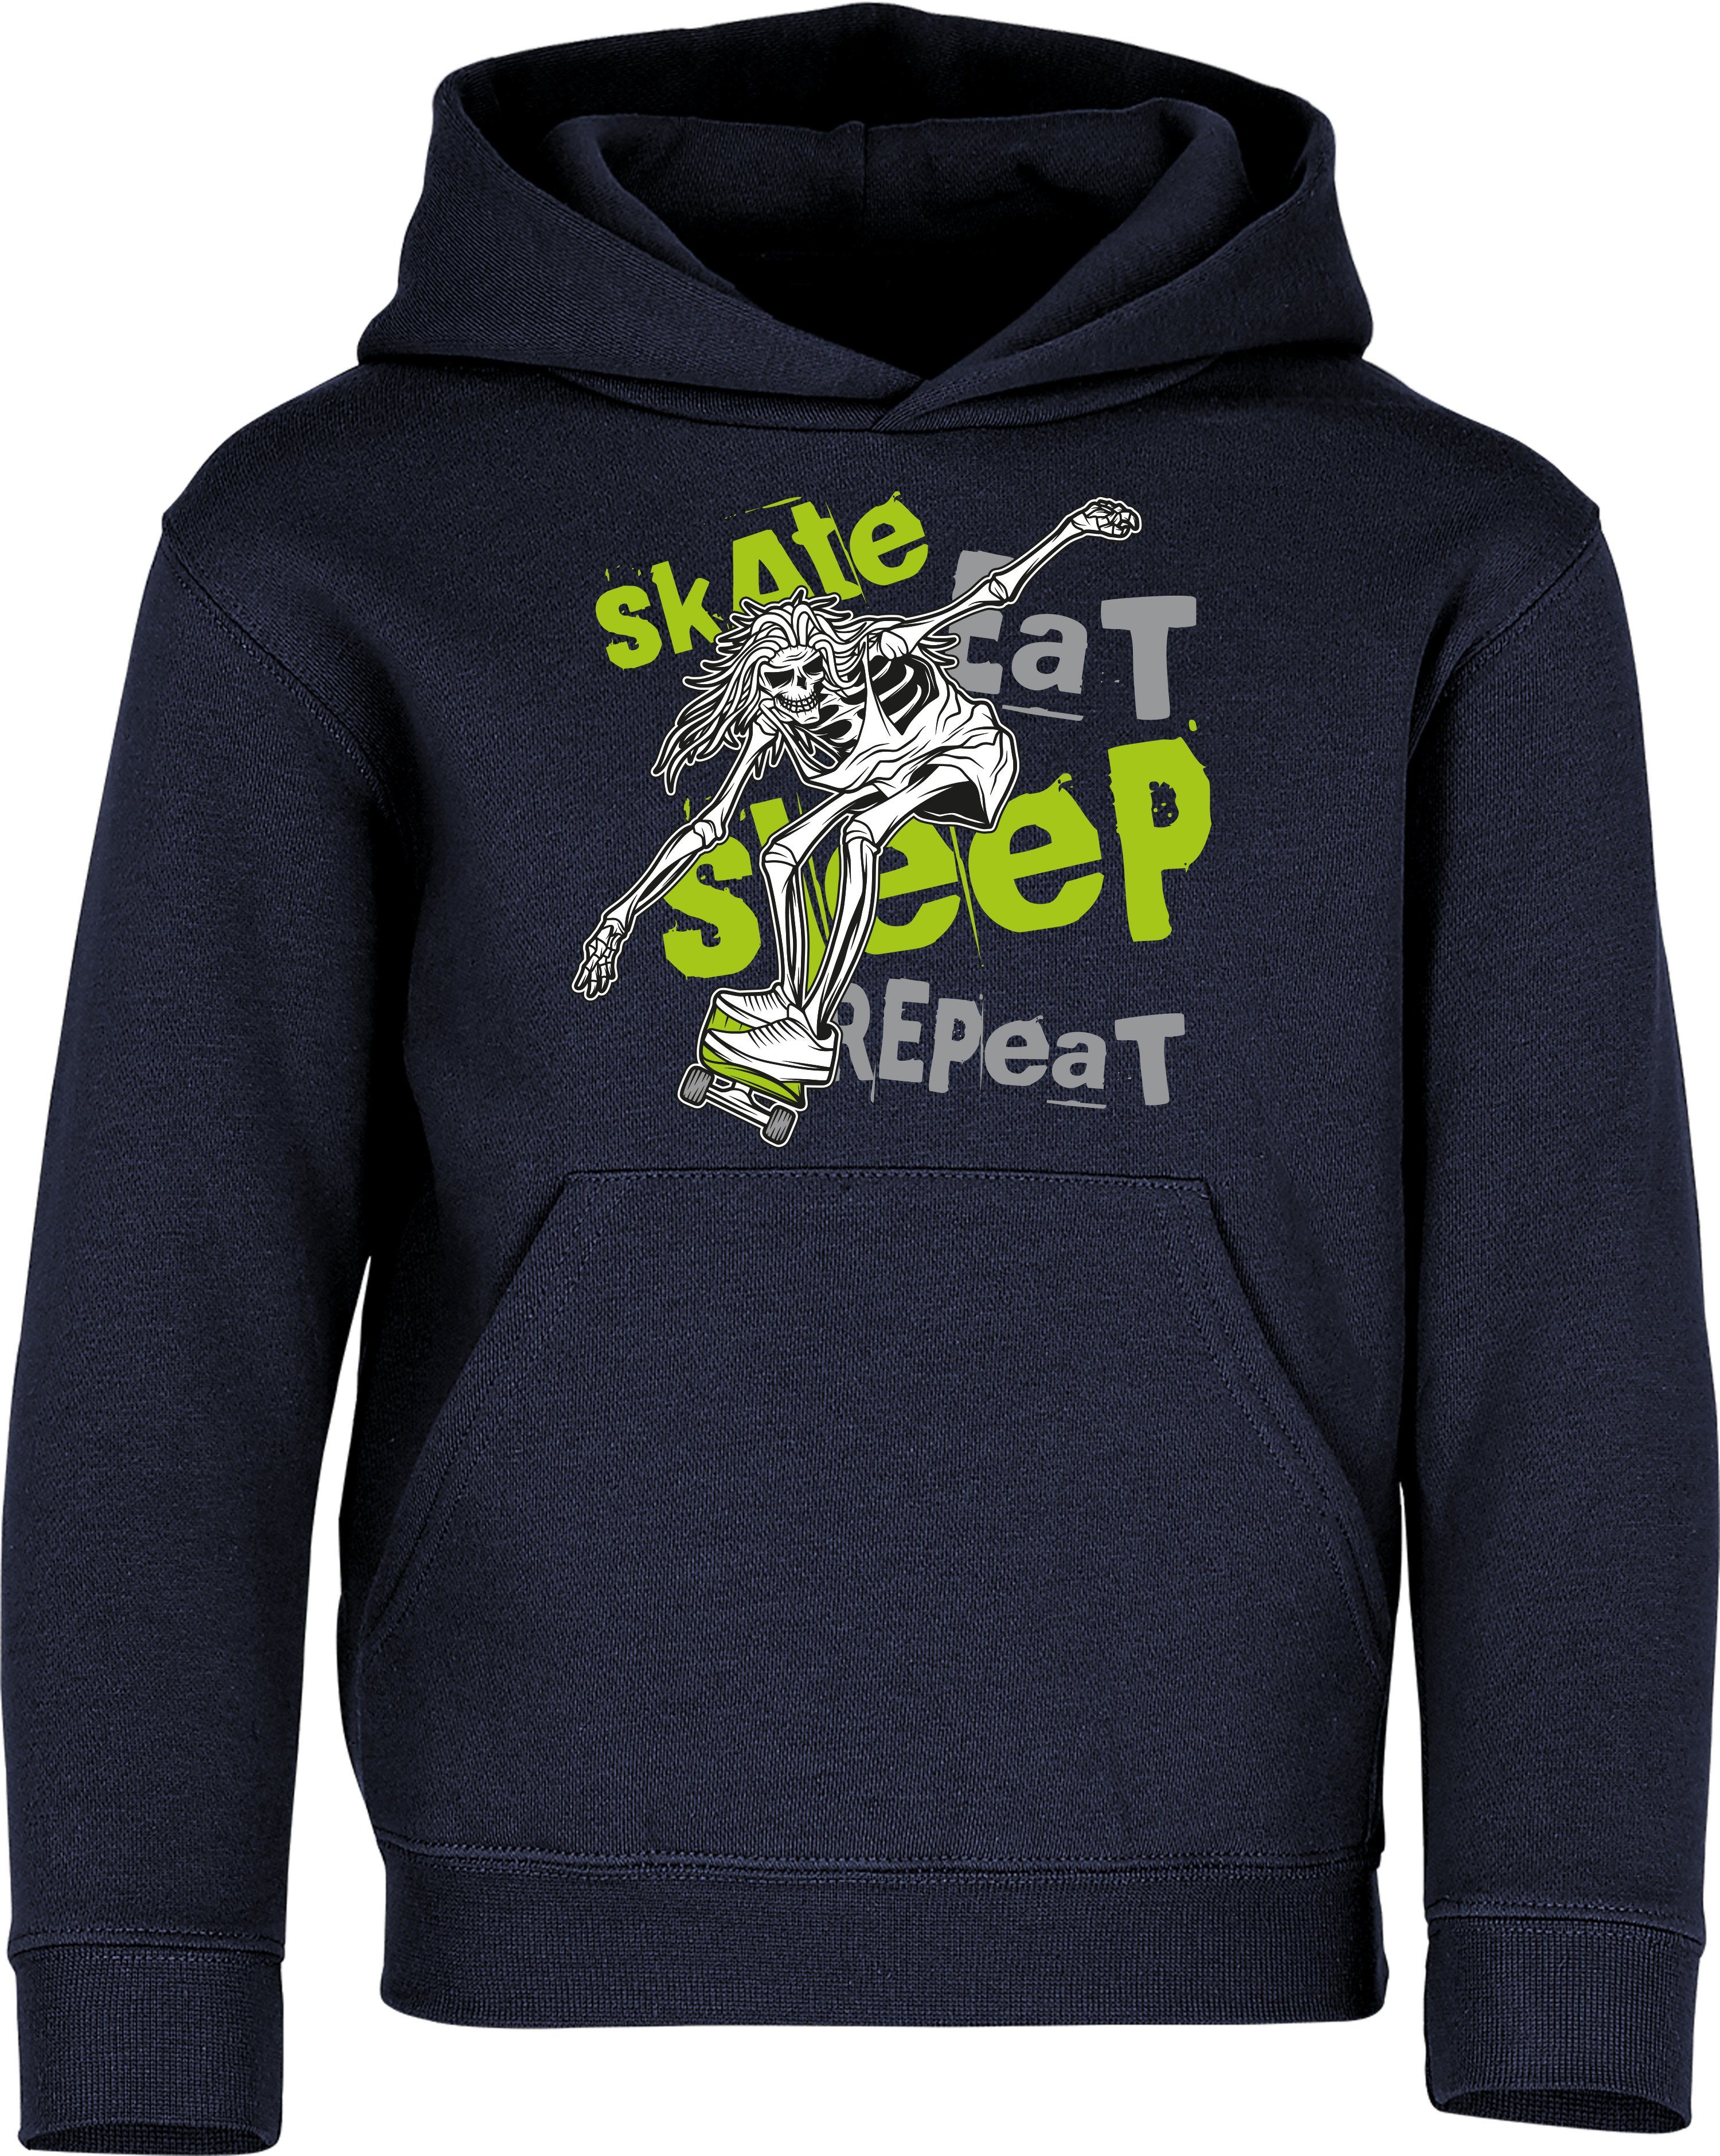 : hochwertiger Repeat - Skateboard Siebdruck Skaten Hoodie Kinder Pulli Navy Sleep Kapuzenpullover Baddery Skate Eat